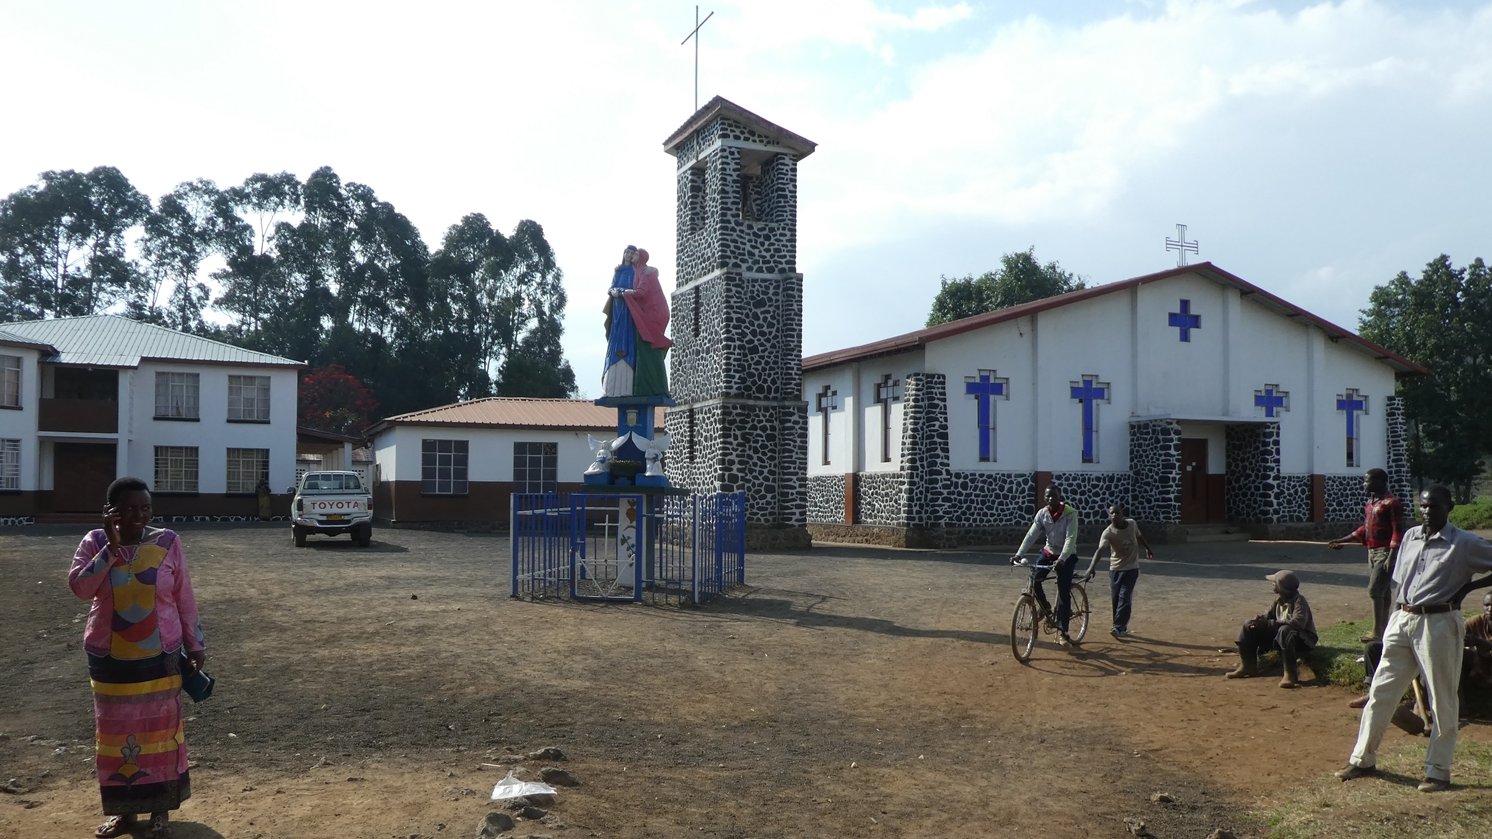 Informationen zu unserer Partnergemeinde in Busasamana in Ruanda (c) G. Ark